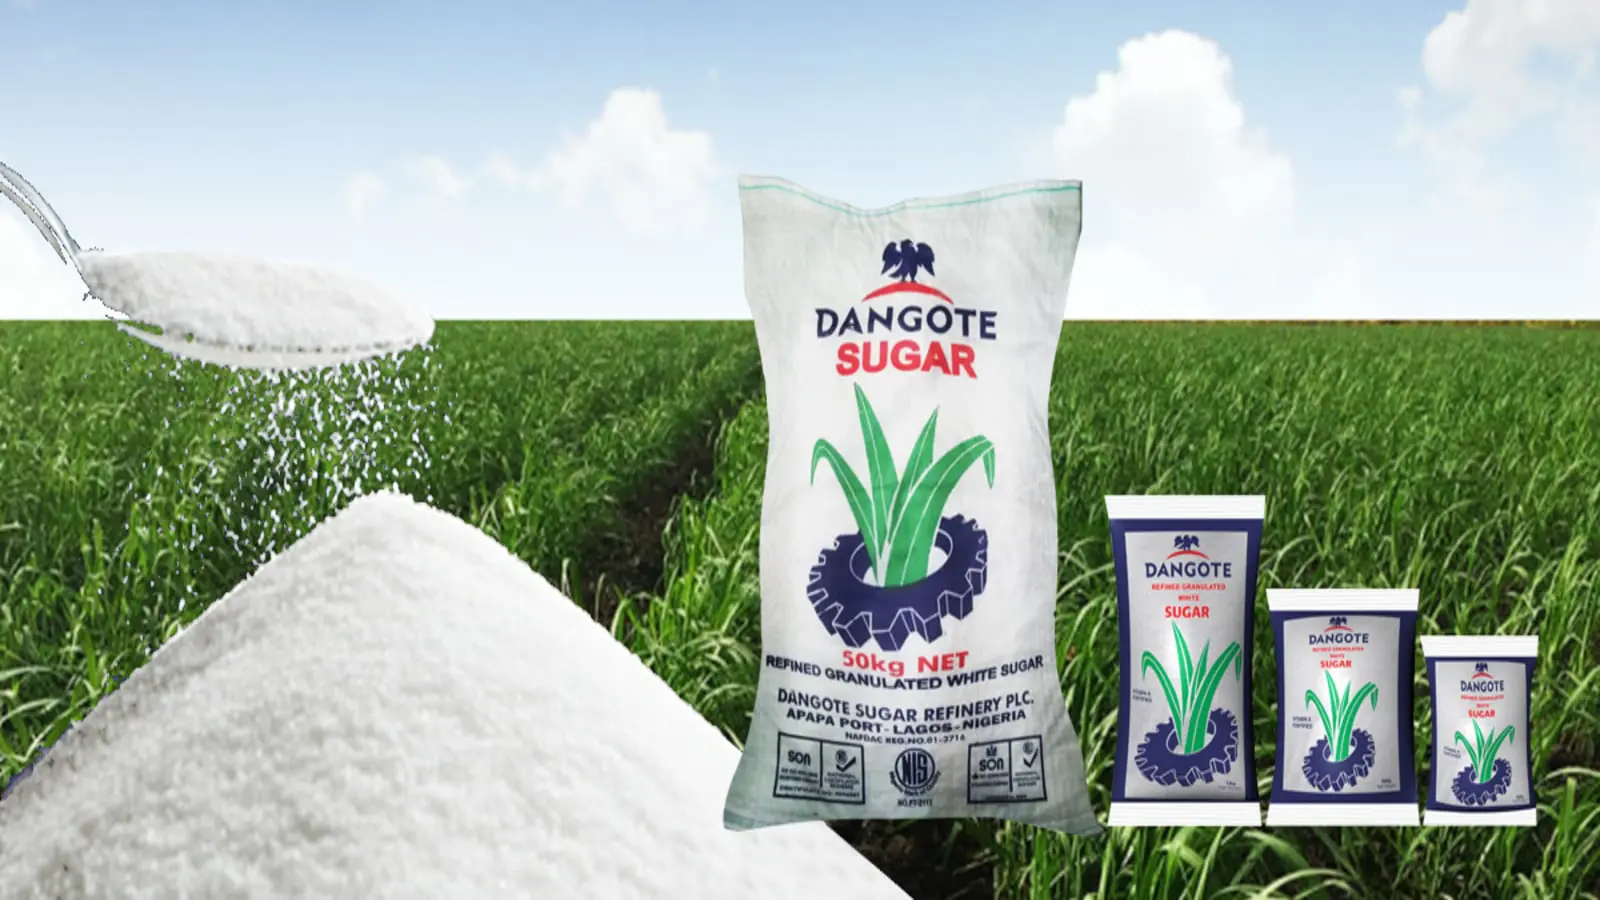 Dangote Sugar Refineries appoints Mariya Aliko Dangote as new Executive Director